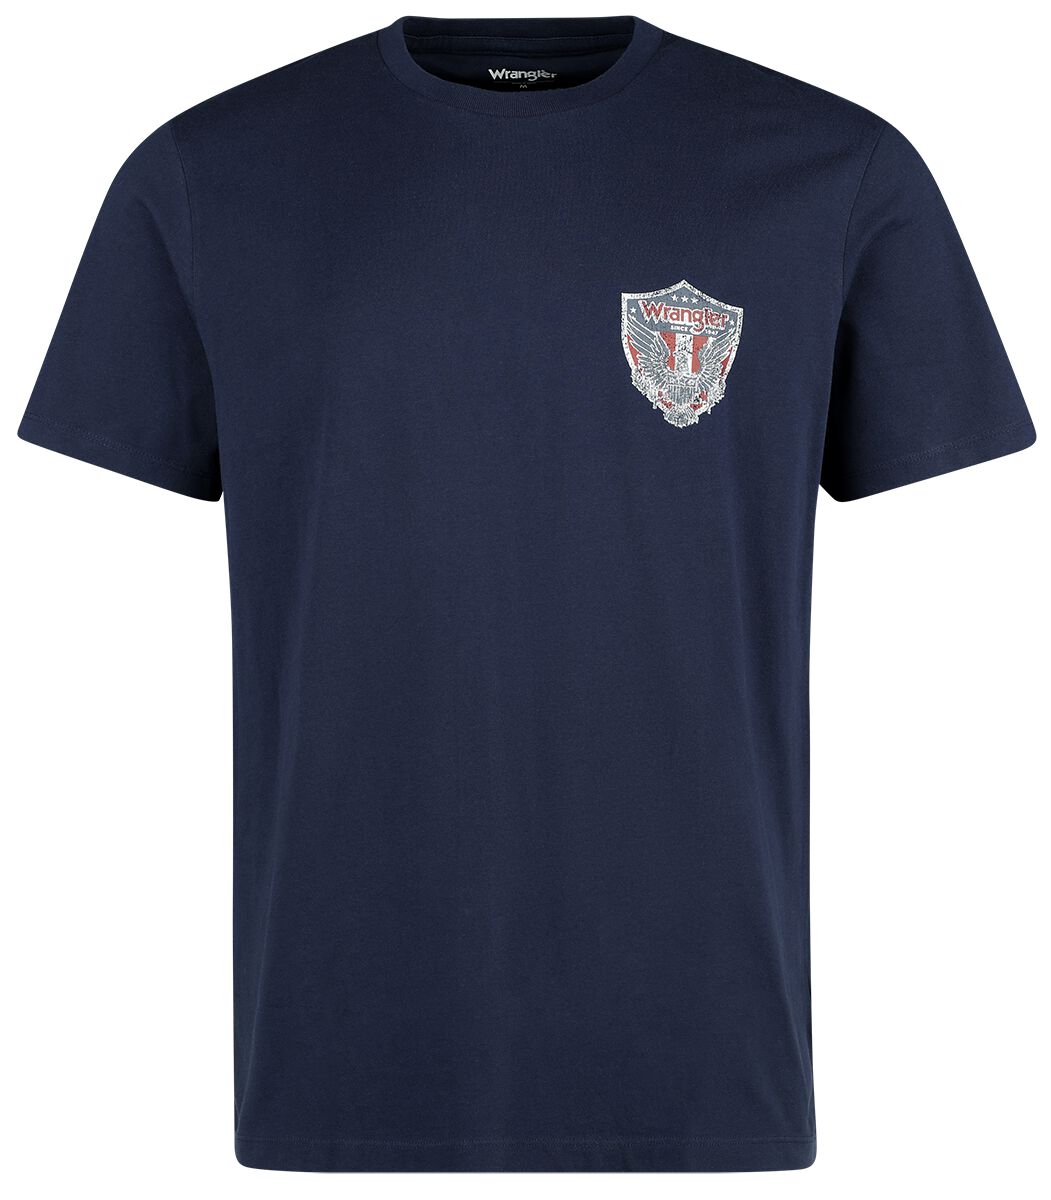 Wrangler T-Shirt - Sign Off Tee Faded Black - M bis XXL - für Männer - Größe XL - schwarz